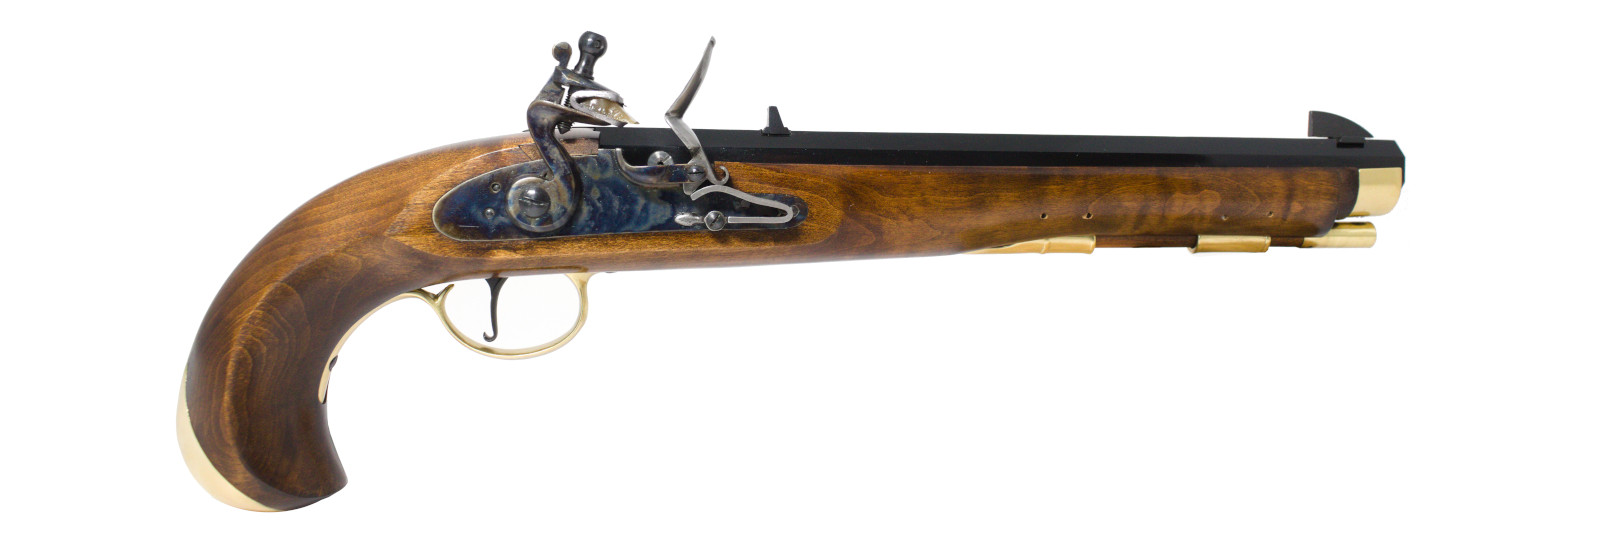 Navy Moll Pistol flintlock model